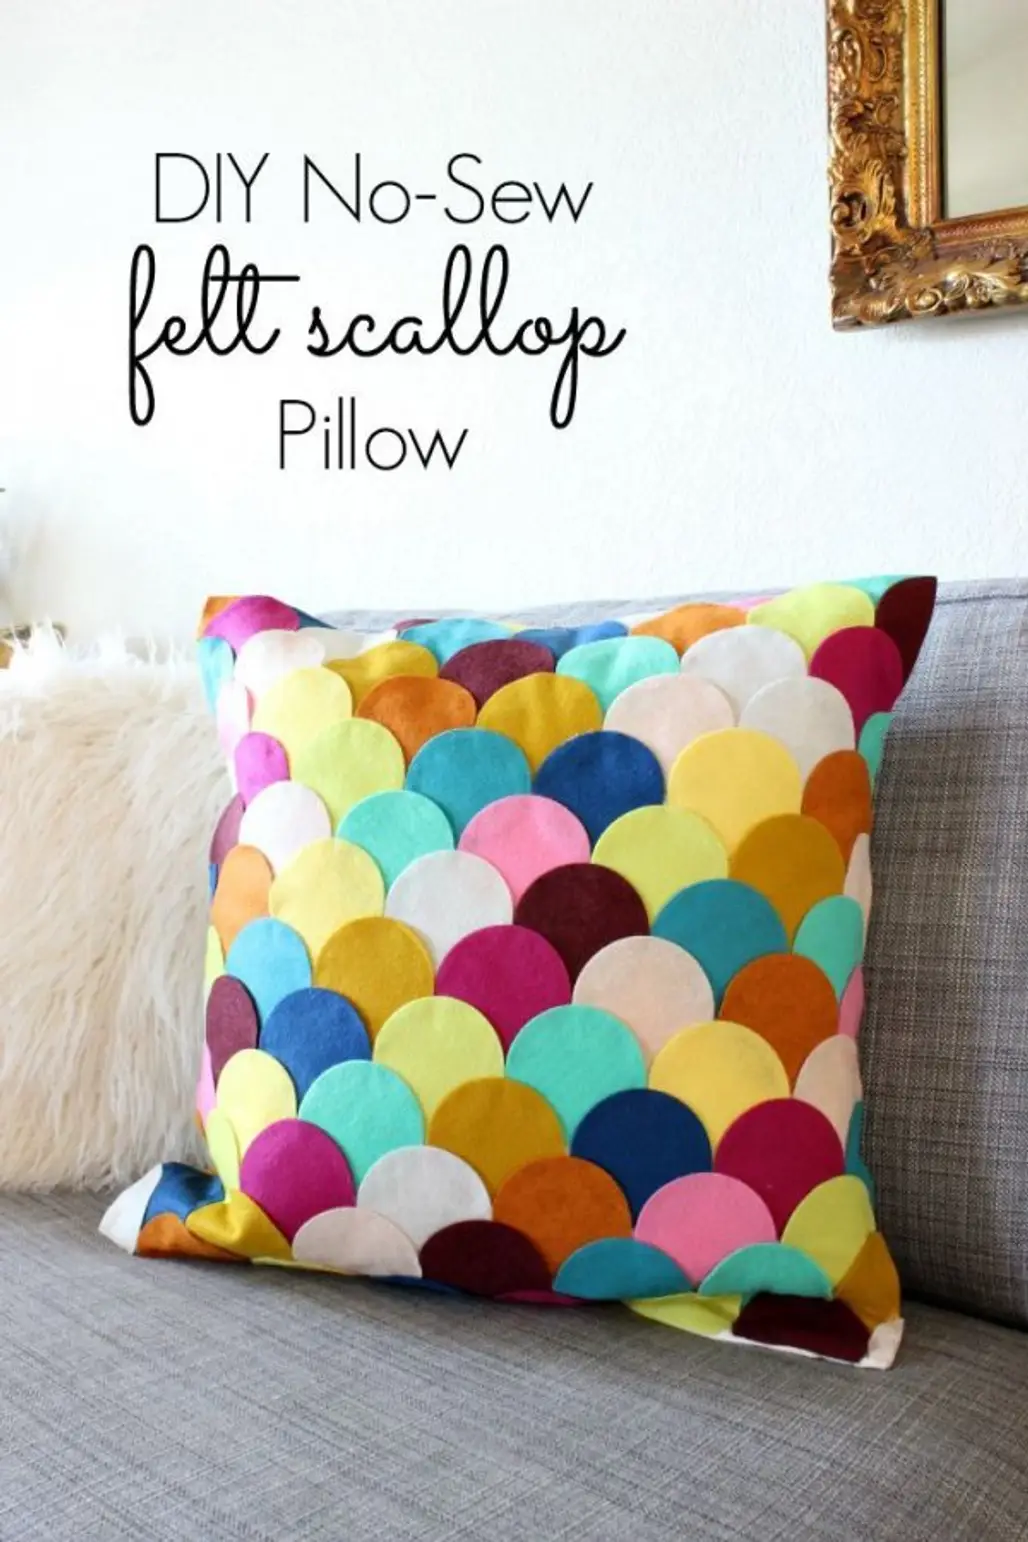 DIY Felt Scalloped Pillow